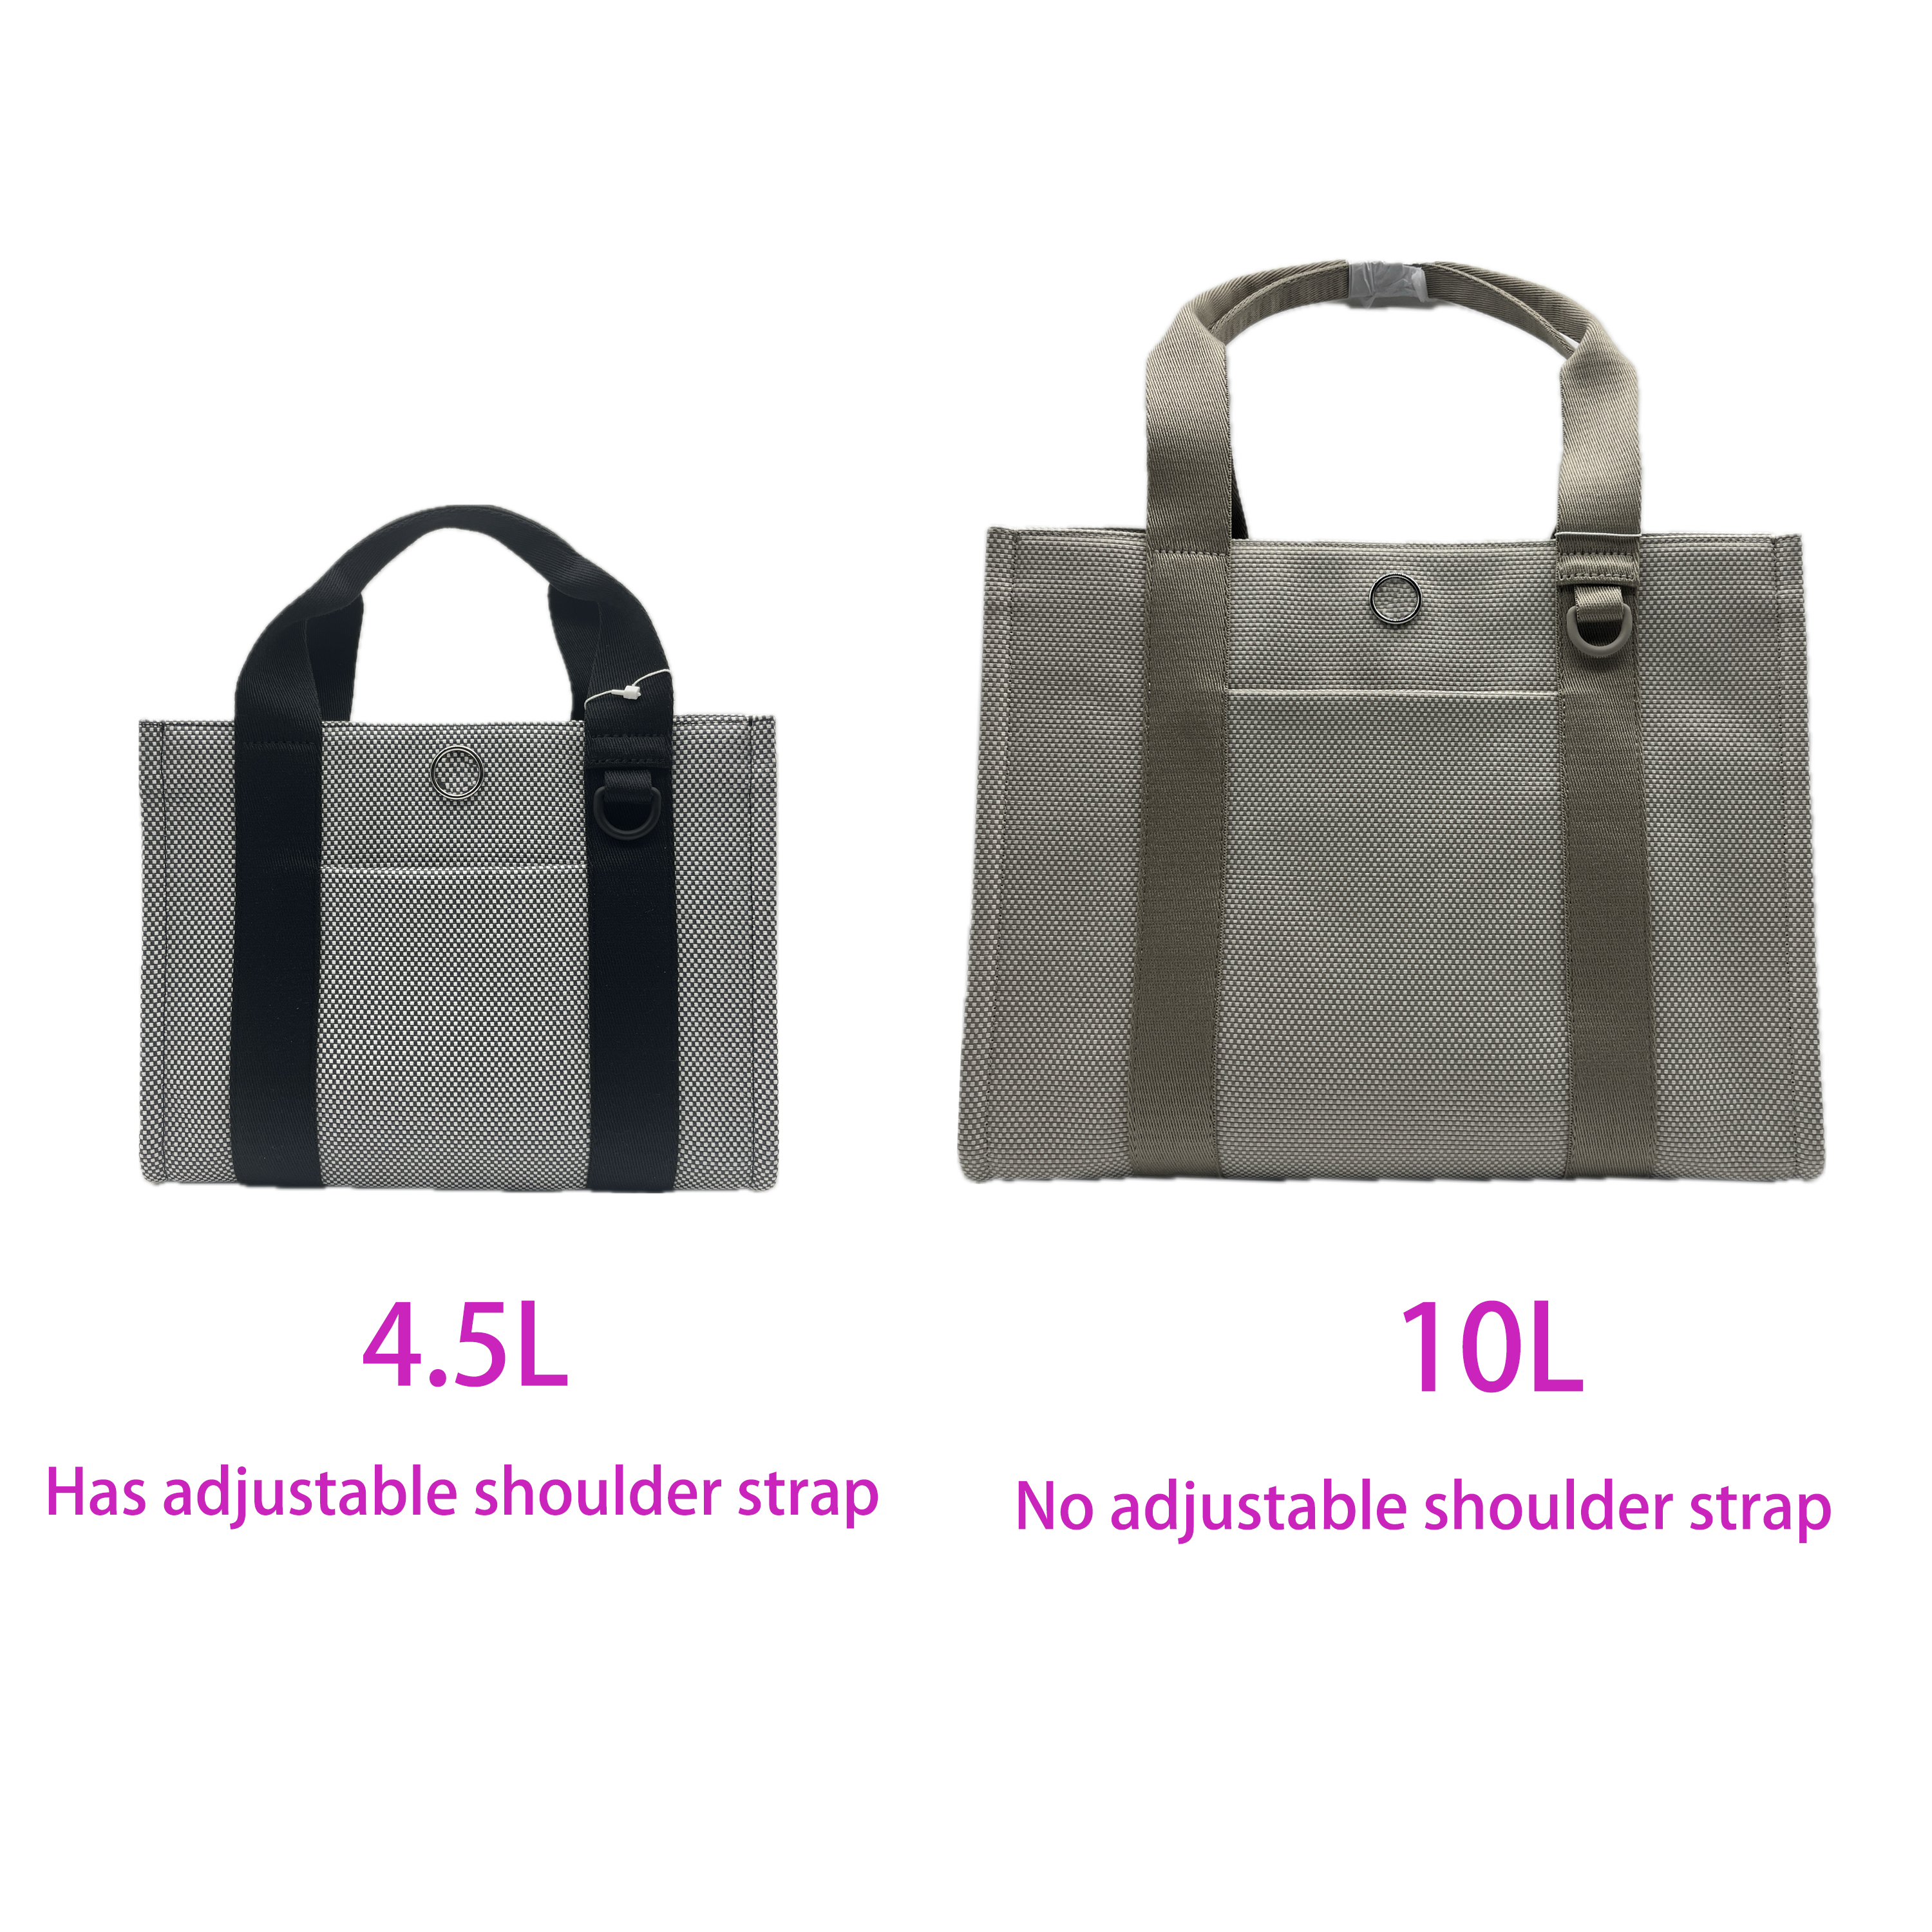 Lu, двухцветная холщовая большая сумка для женщин, большая вместительная сумка для покупок, дорожная сумка, 2 размера, 10 л и мини, 4,5 л. qltrade_9 Предварительная продажа, цикл доставки составляет около 30 дней